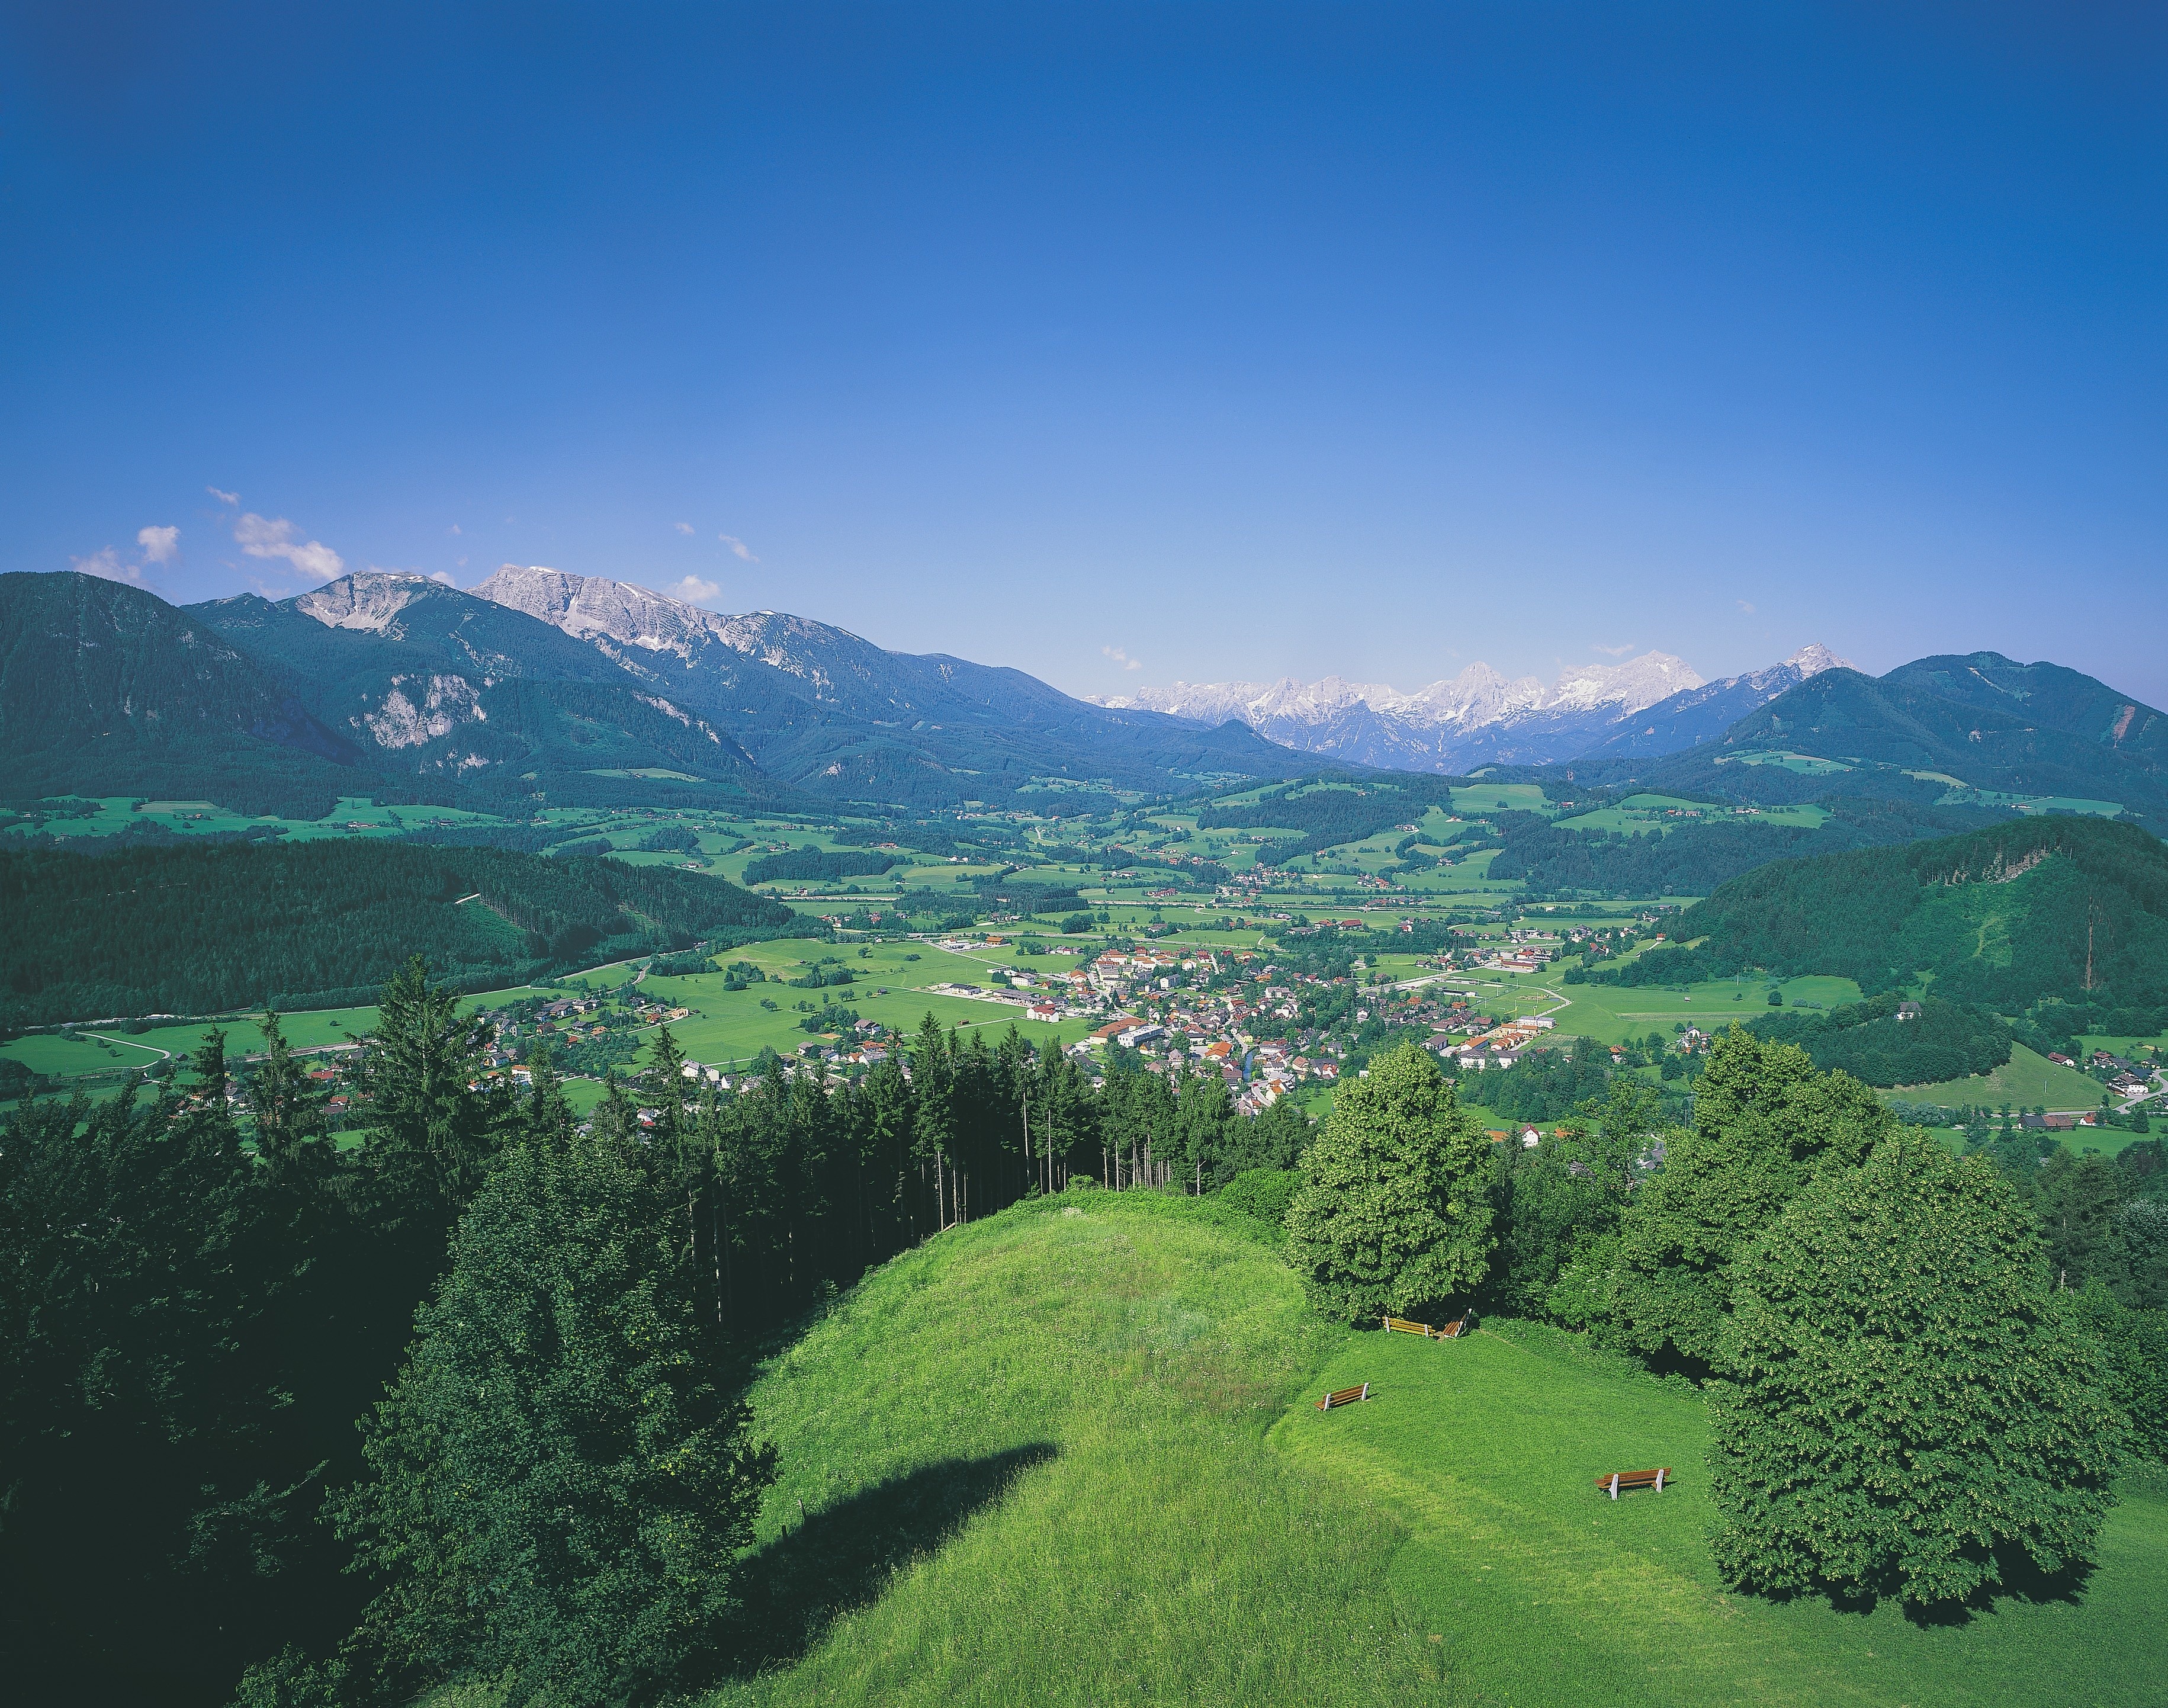 General 3661x2884 landscape Austria nature mountains